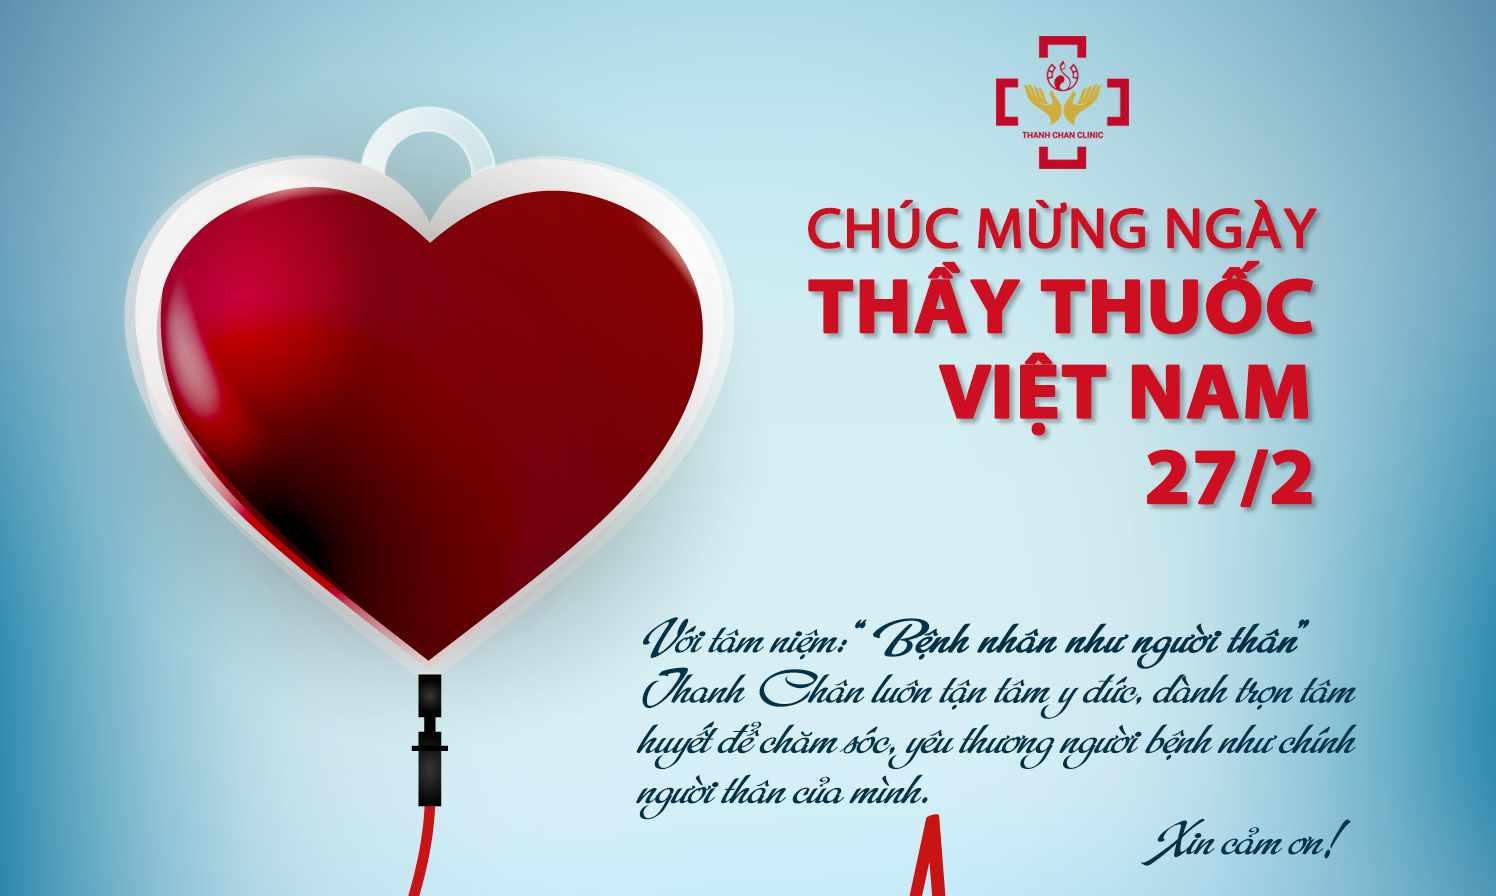 Biểu tượng ngày Thầy thuốc Việt Nam: Hình ảnh và ý nghĩa - META.vn